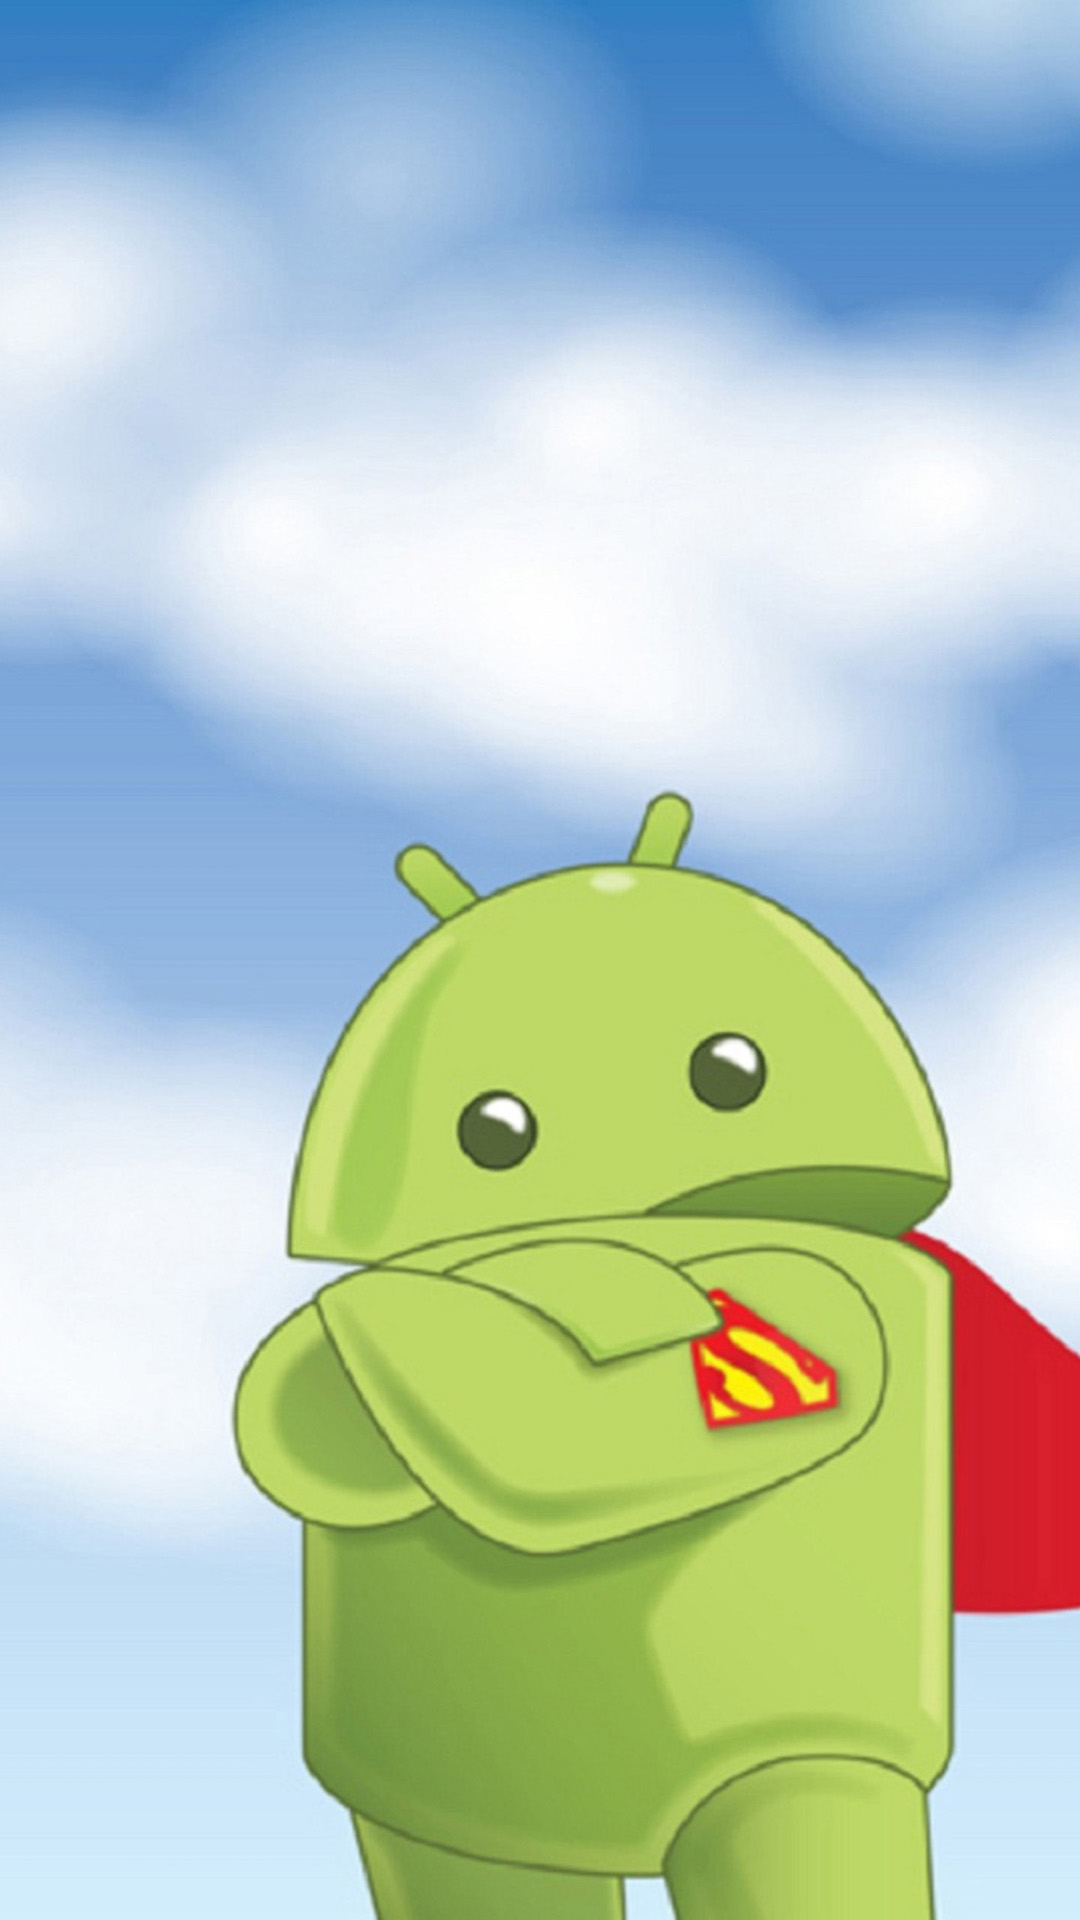 sfondi super hd per android,verde,cartone animato,illustrazione,cielo,animazione